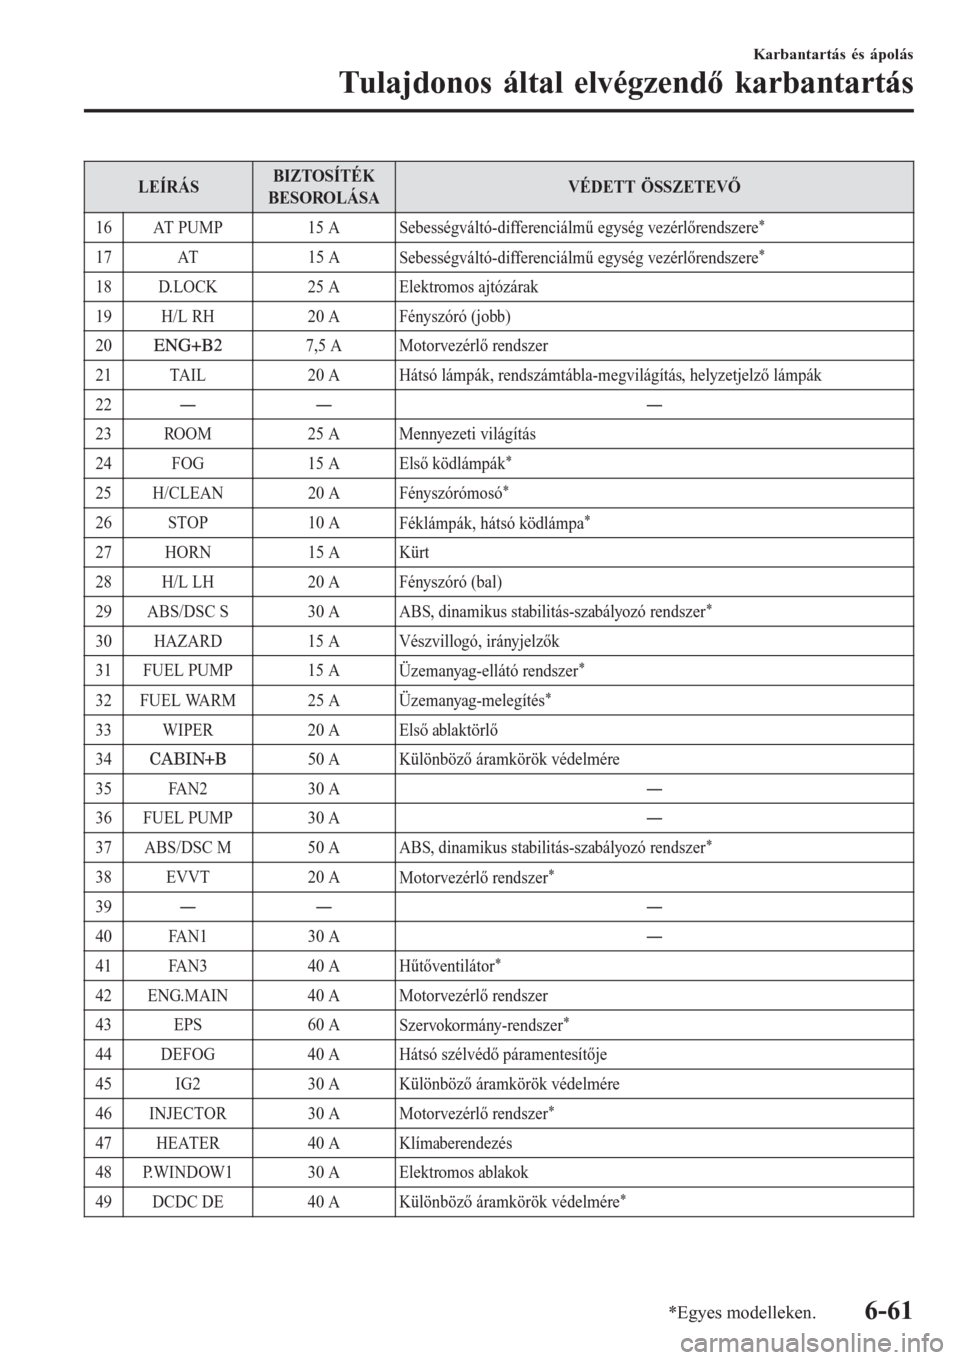 MAZDA MODEL CX-3 2016  Kezelési útmutató (in Hungarian) LEÍRÁSBIZTOSÍTÉK
BESOROLÁSAVÉDETT ÖSSZETEVŐ
16 AT PUMP 15 A
Sebességváltó-differenciálmű egység vezérlőrendszere
*
17 AT 15 A
Sebességváltó-differenciálmű egység vezérlőrendsze